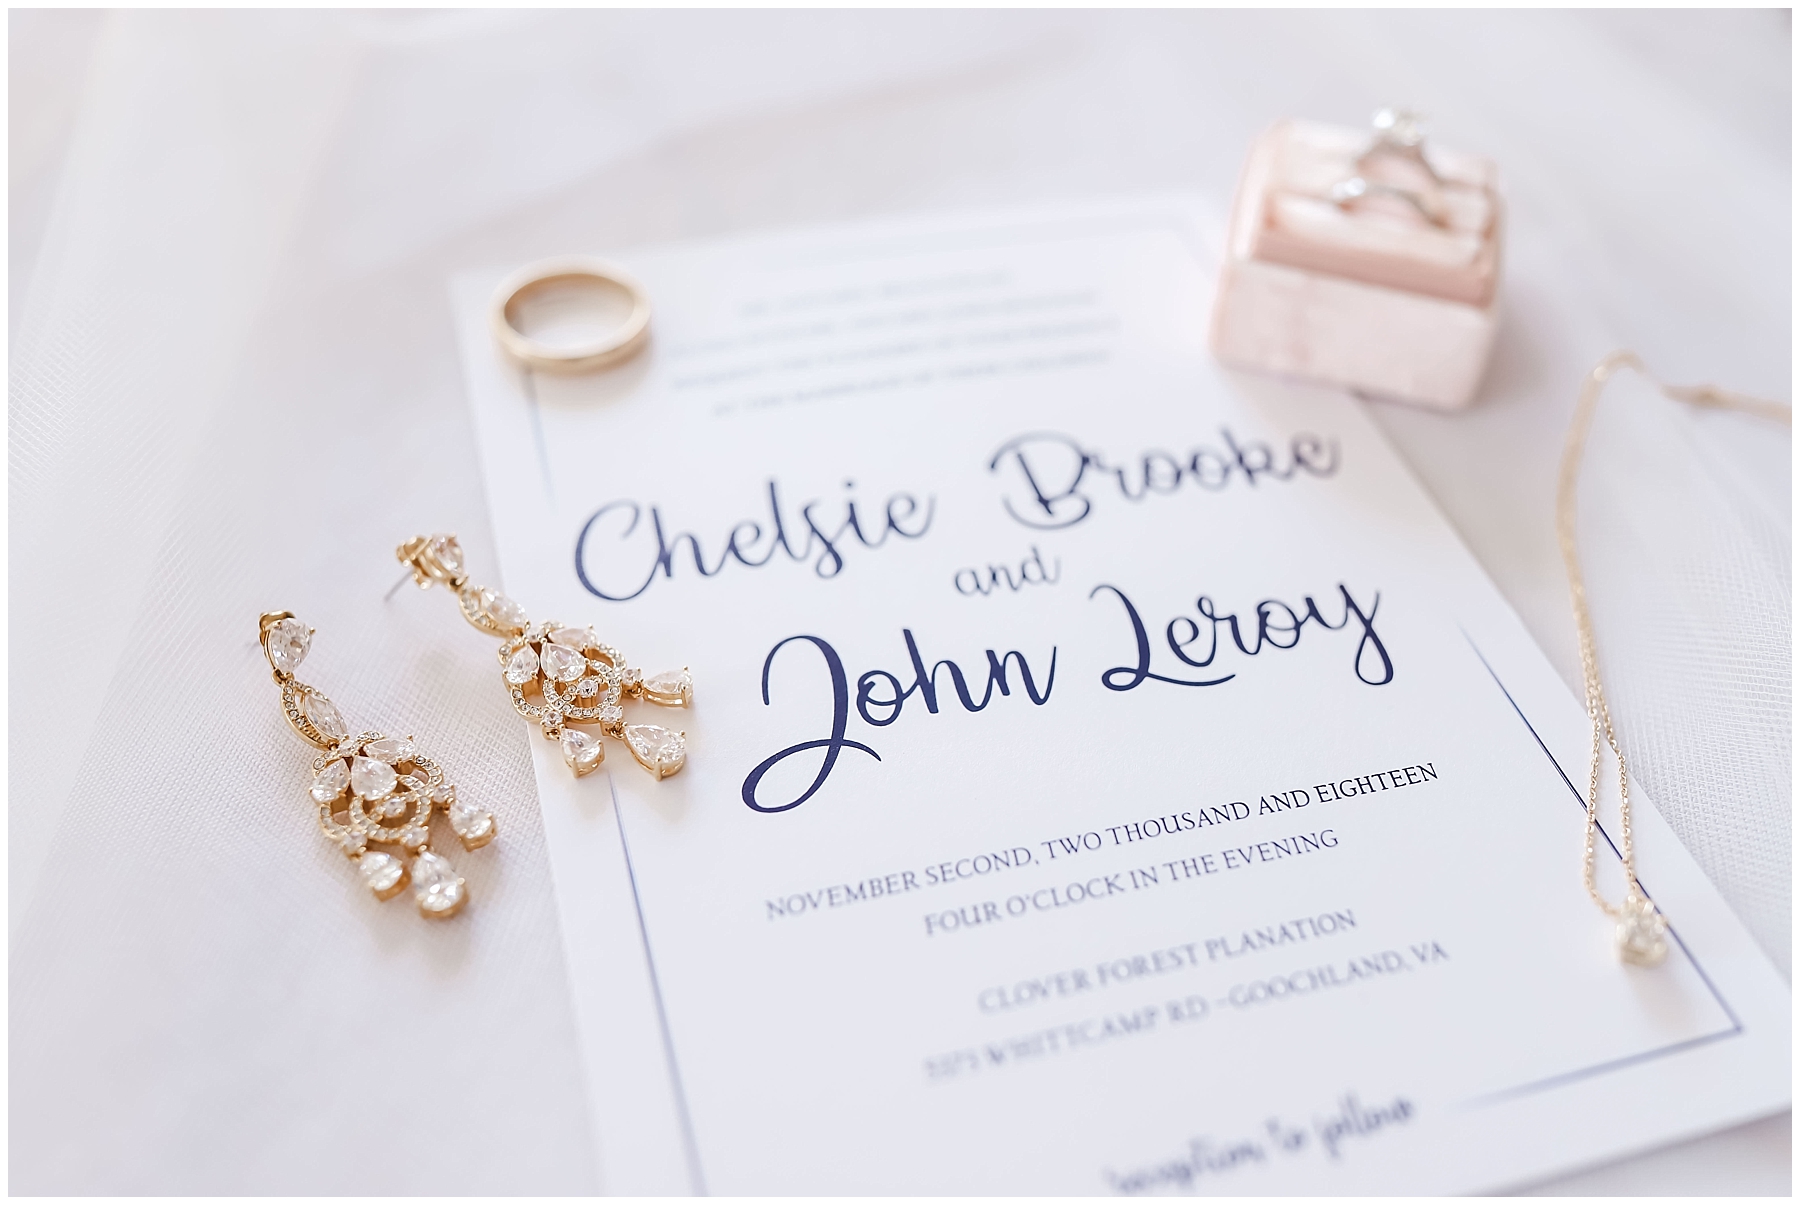 Chelsie & John {Married} | faithphotography.net